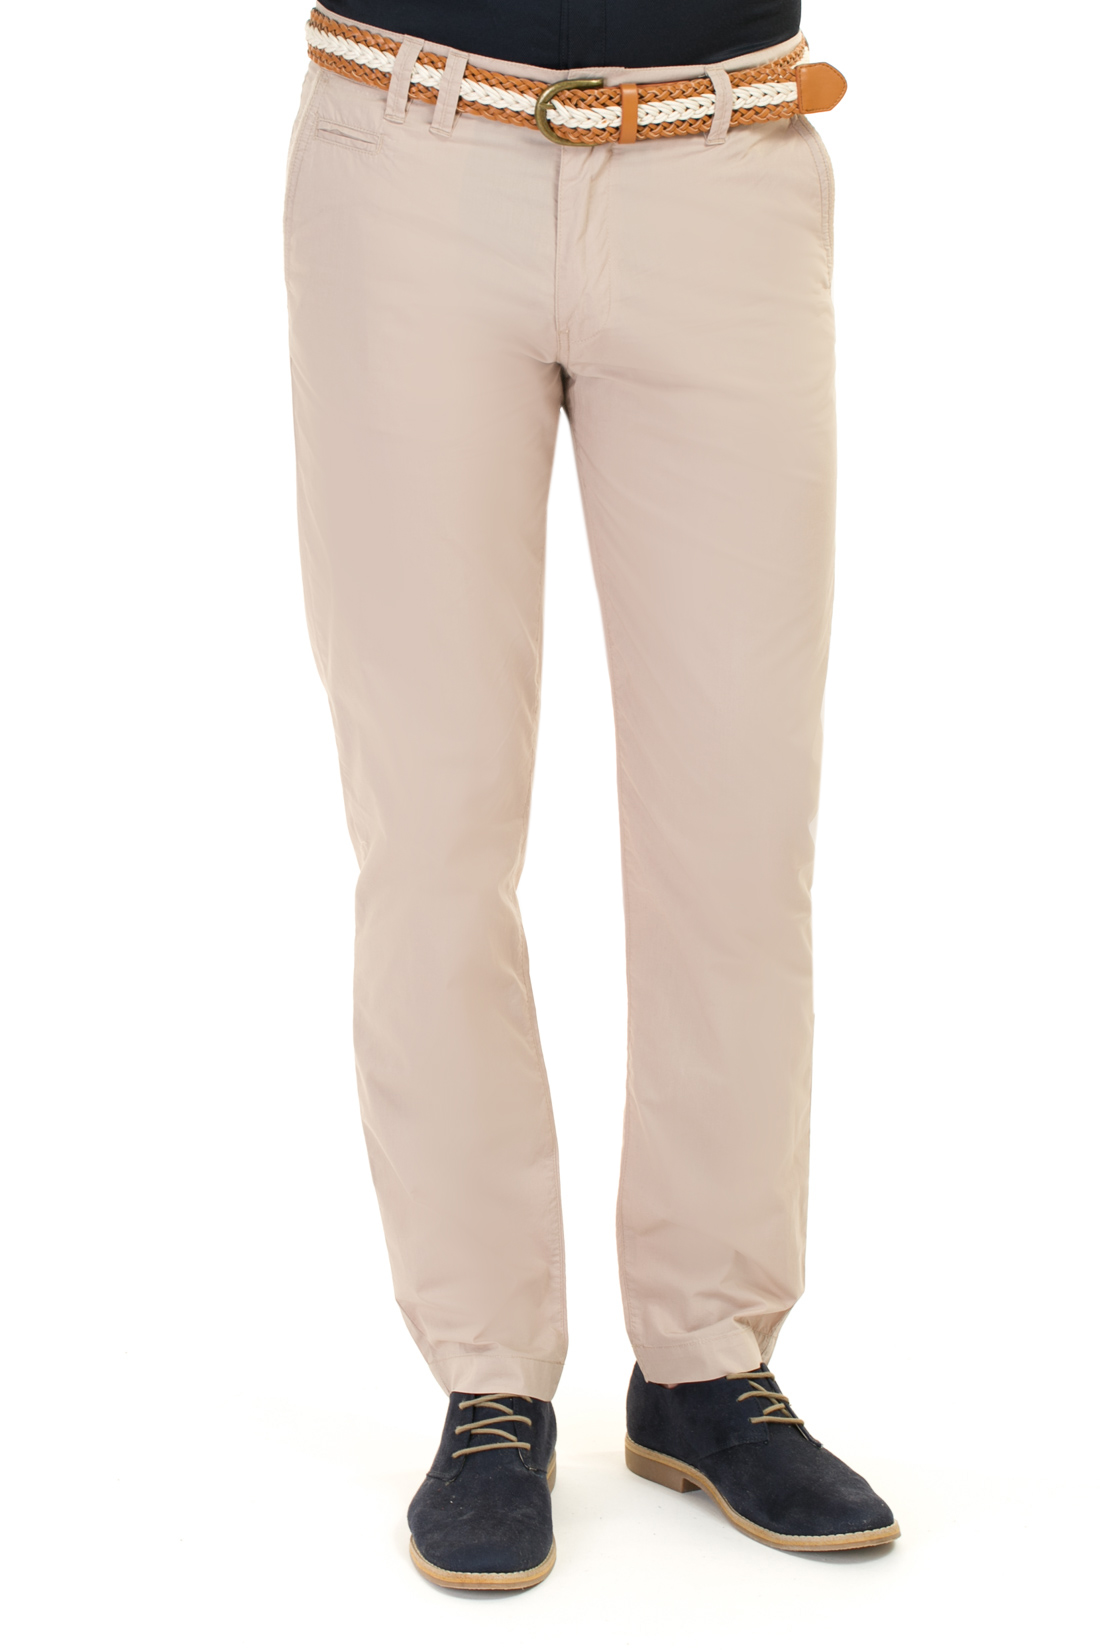 Повседневные брюки из хлопка (арт. baon B797014), размер M, цвет бежевый Повседневные брюки из хлопка (арт. baon B797014) - фото 1